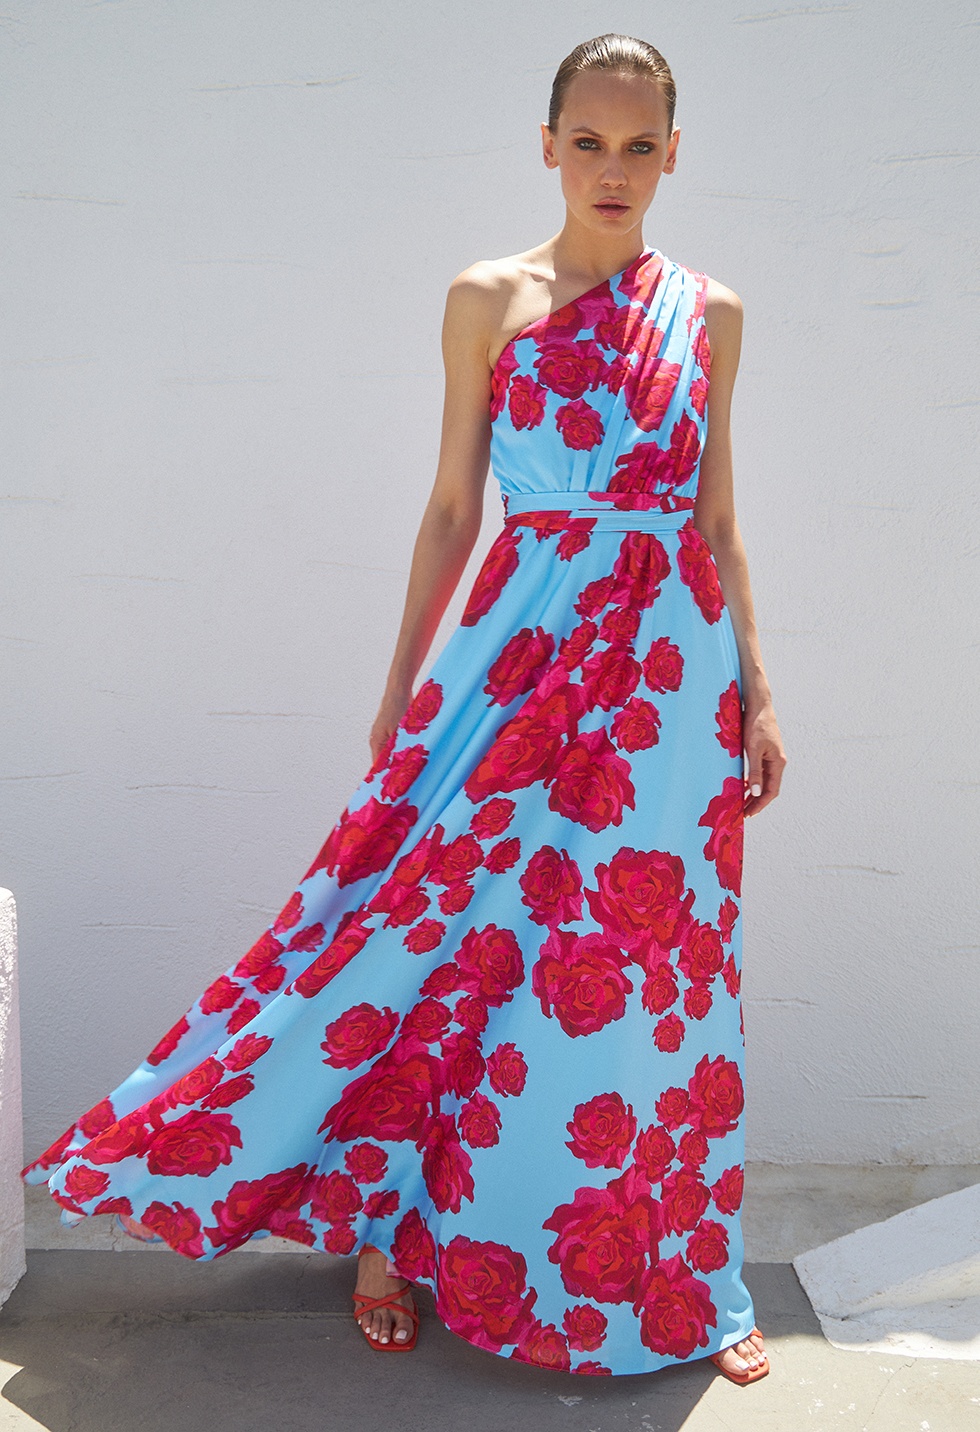 Σατινέ φόρεμα με λουλουδια